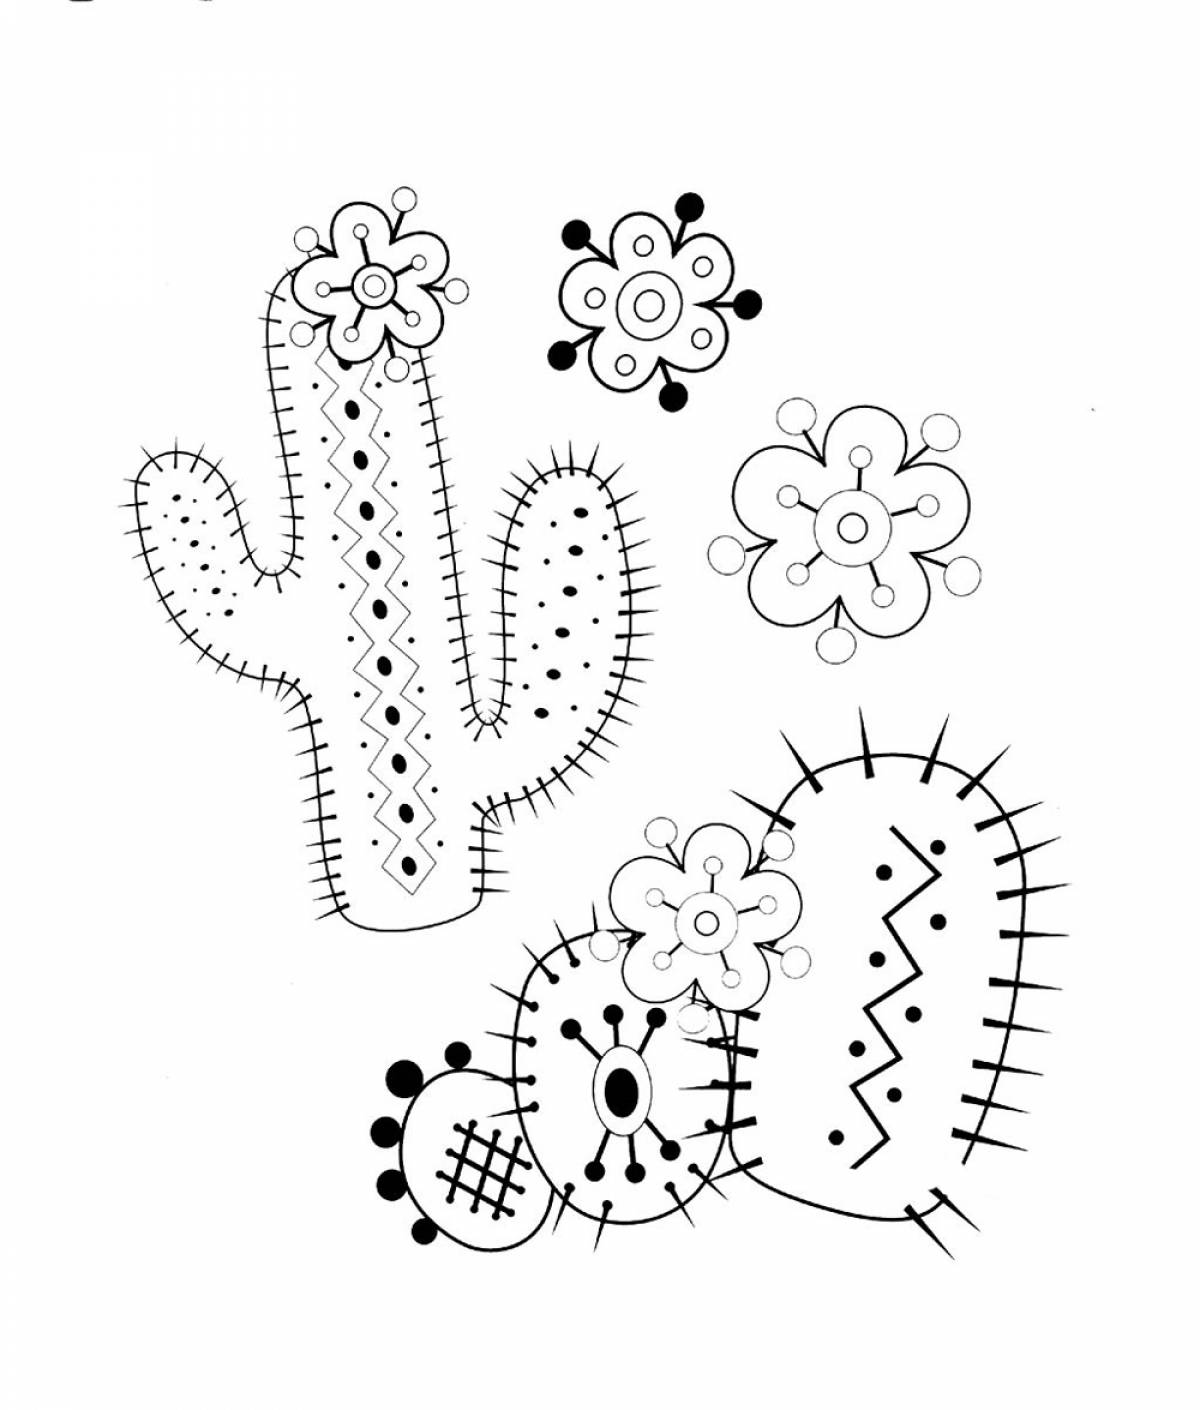 Cartoon cactus